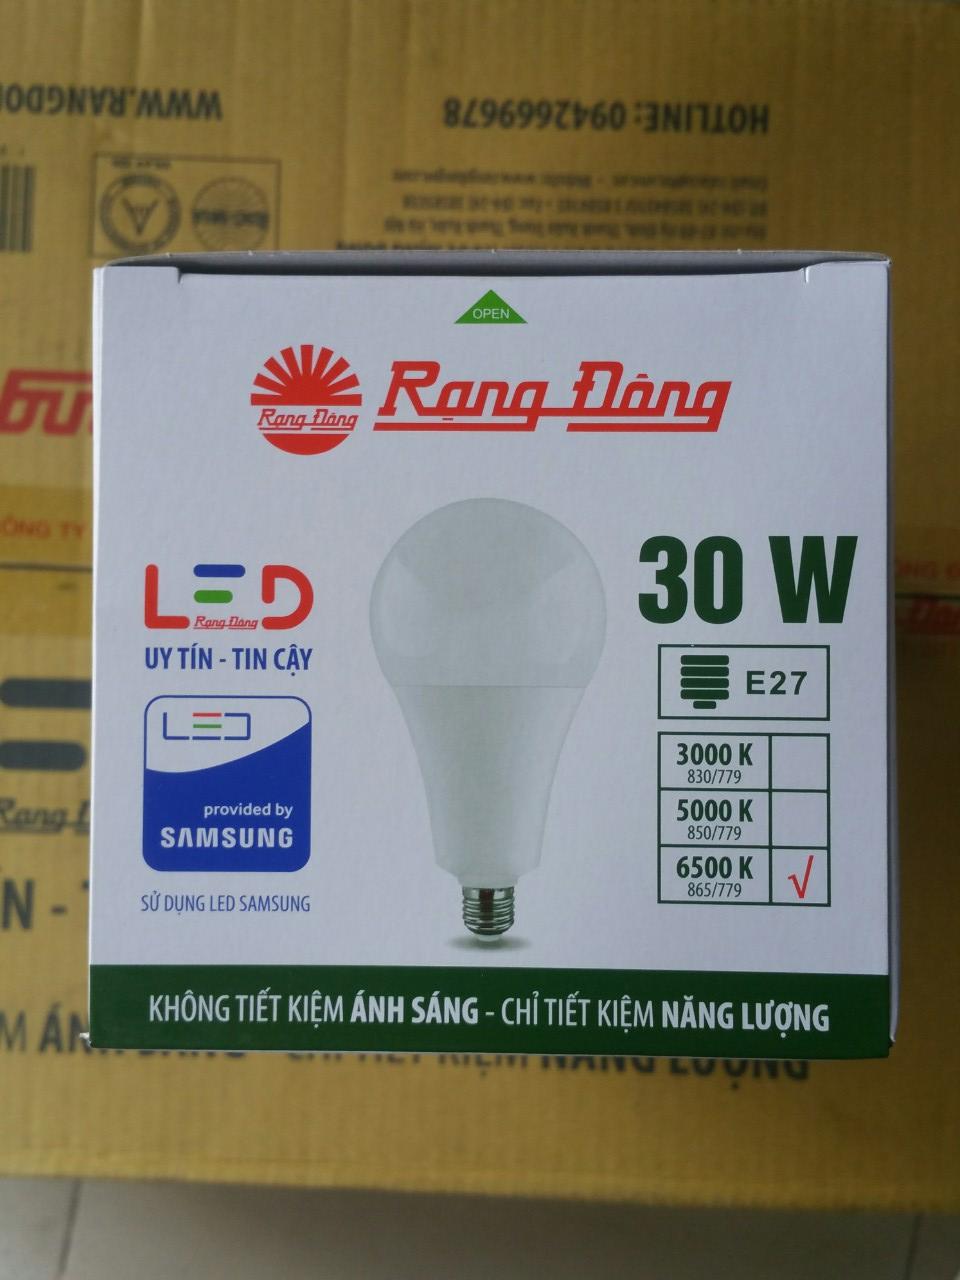 Bóng đèn led tròn 30W Rạng Đông- Chip led Samsung siêu sáng